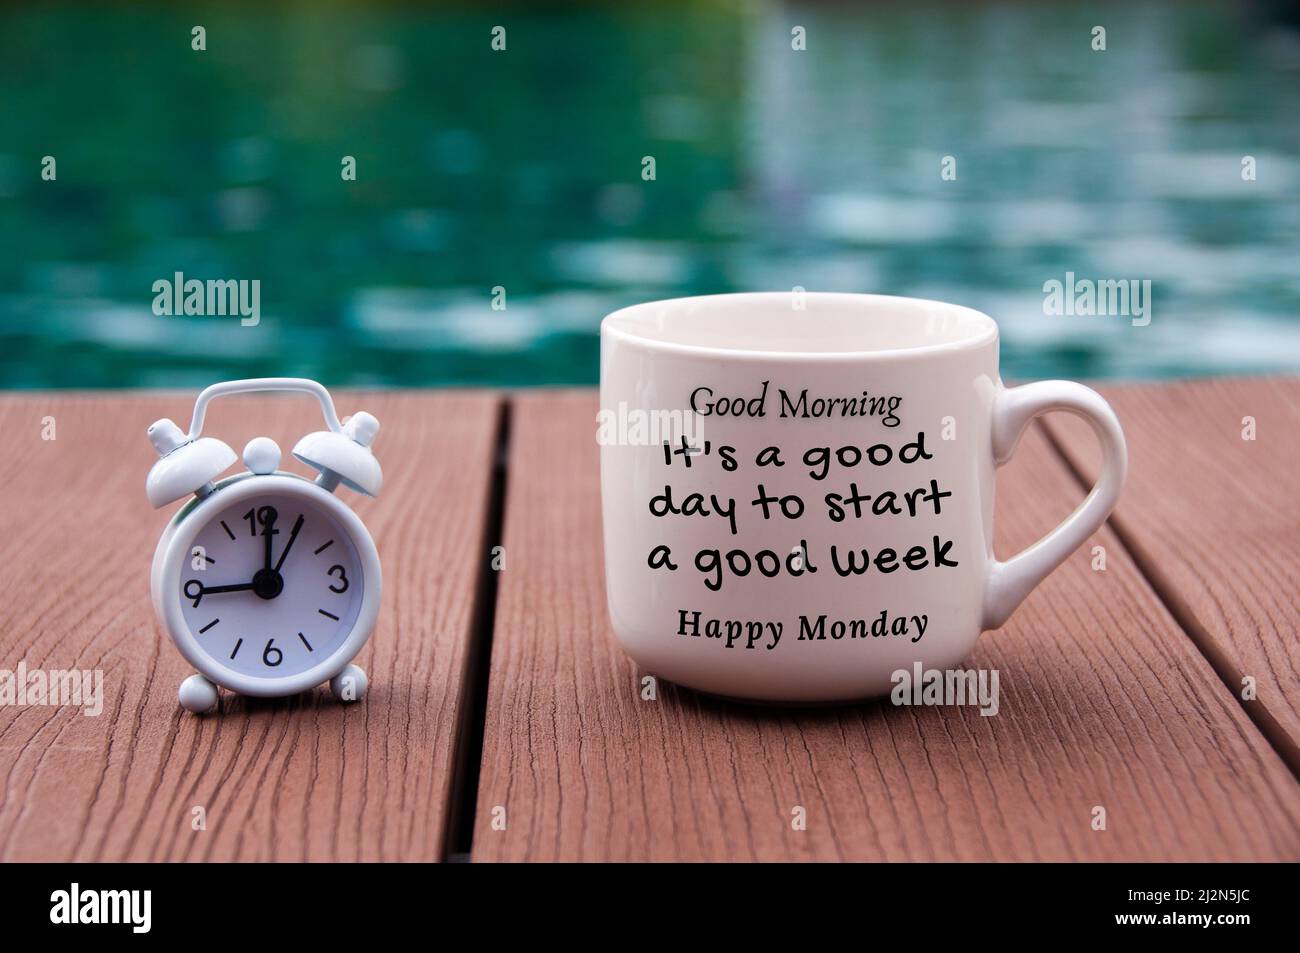 Weißer Wecker auf Holzboden mit Zitat-Text am Morgen auf Kaffeetasse - Es  ist ein guter Tag, um eine gute Woche zu beginnen. Mit verschwommenem Pool  Hintergrund Stockfotografie - Alamy